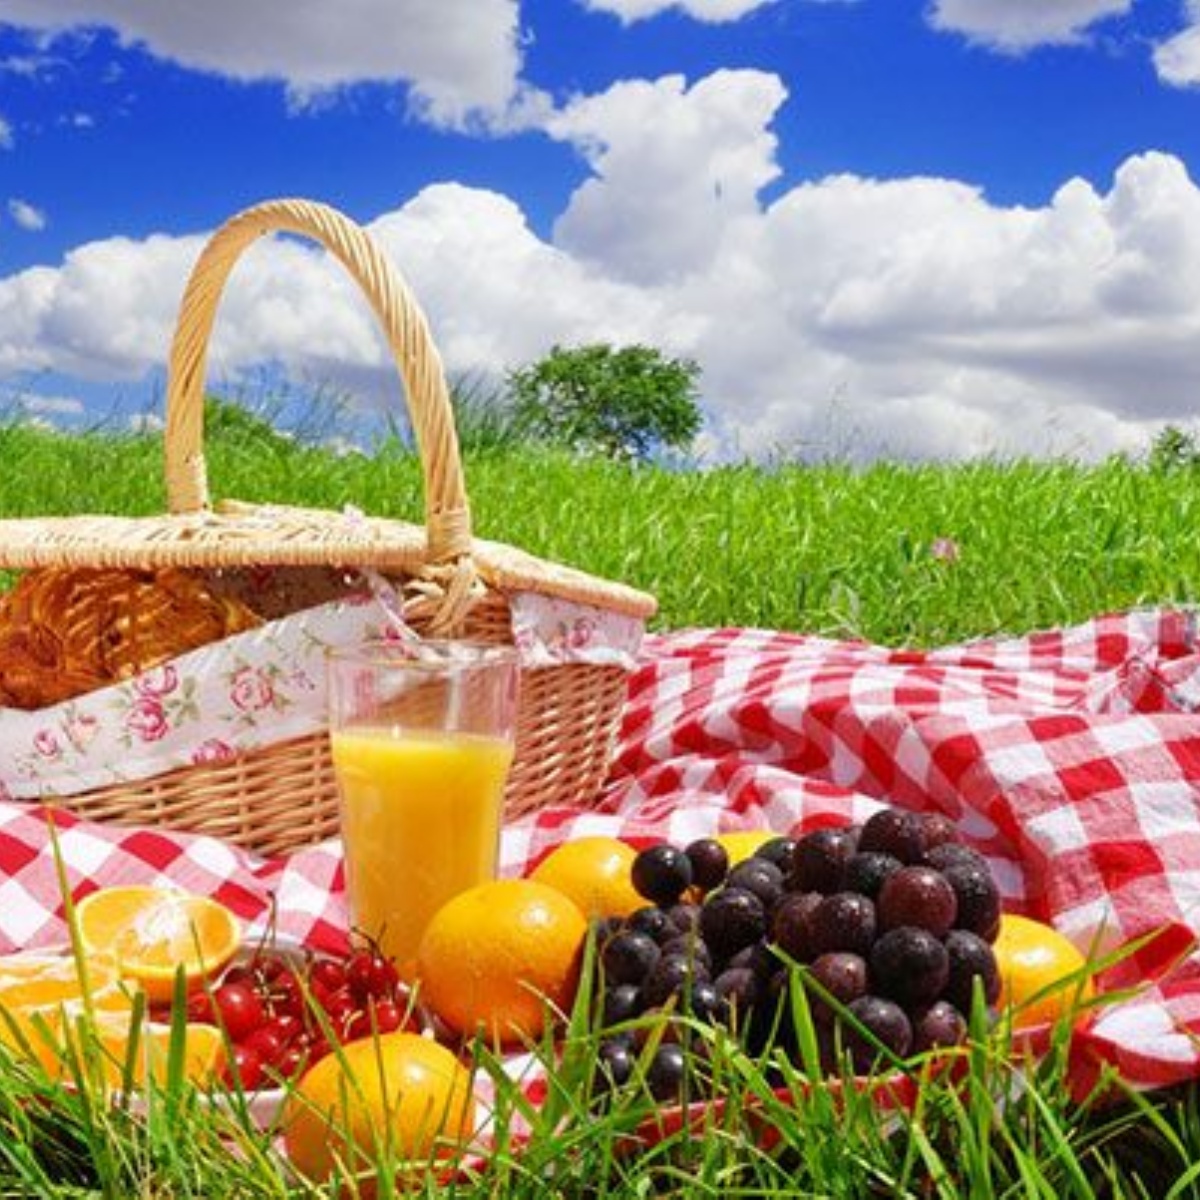 Мир пикника. Международный день пикника (International Picnic Day). Еда на природе. Выходные на природе. Летний пикник на природе.